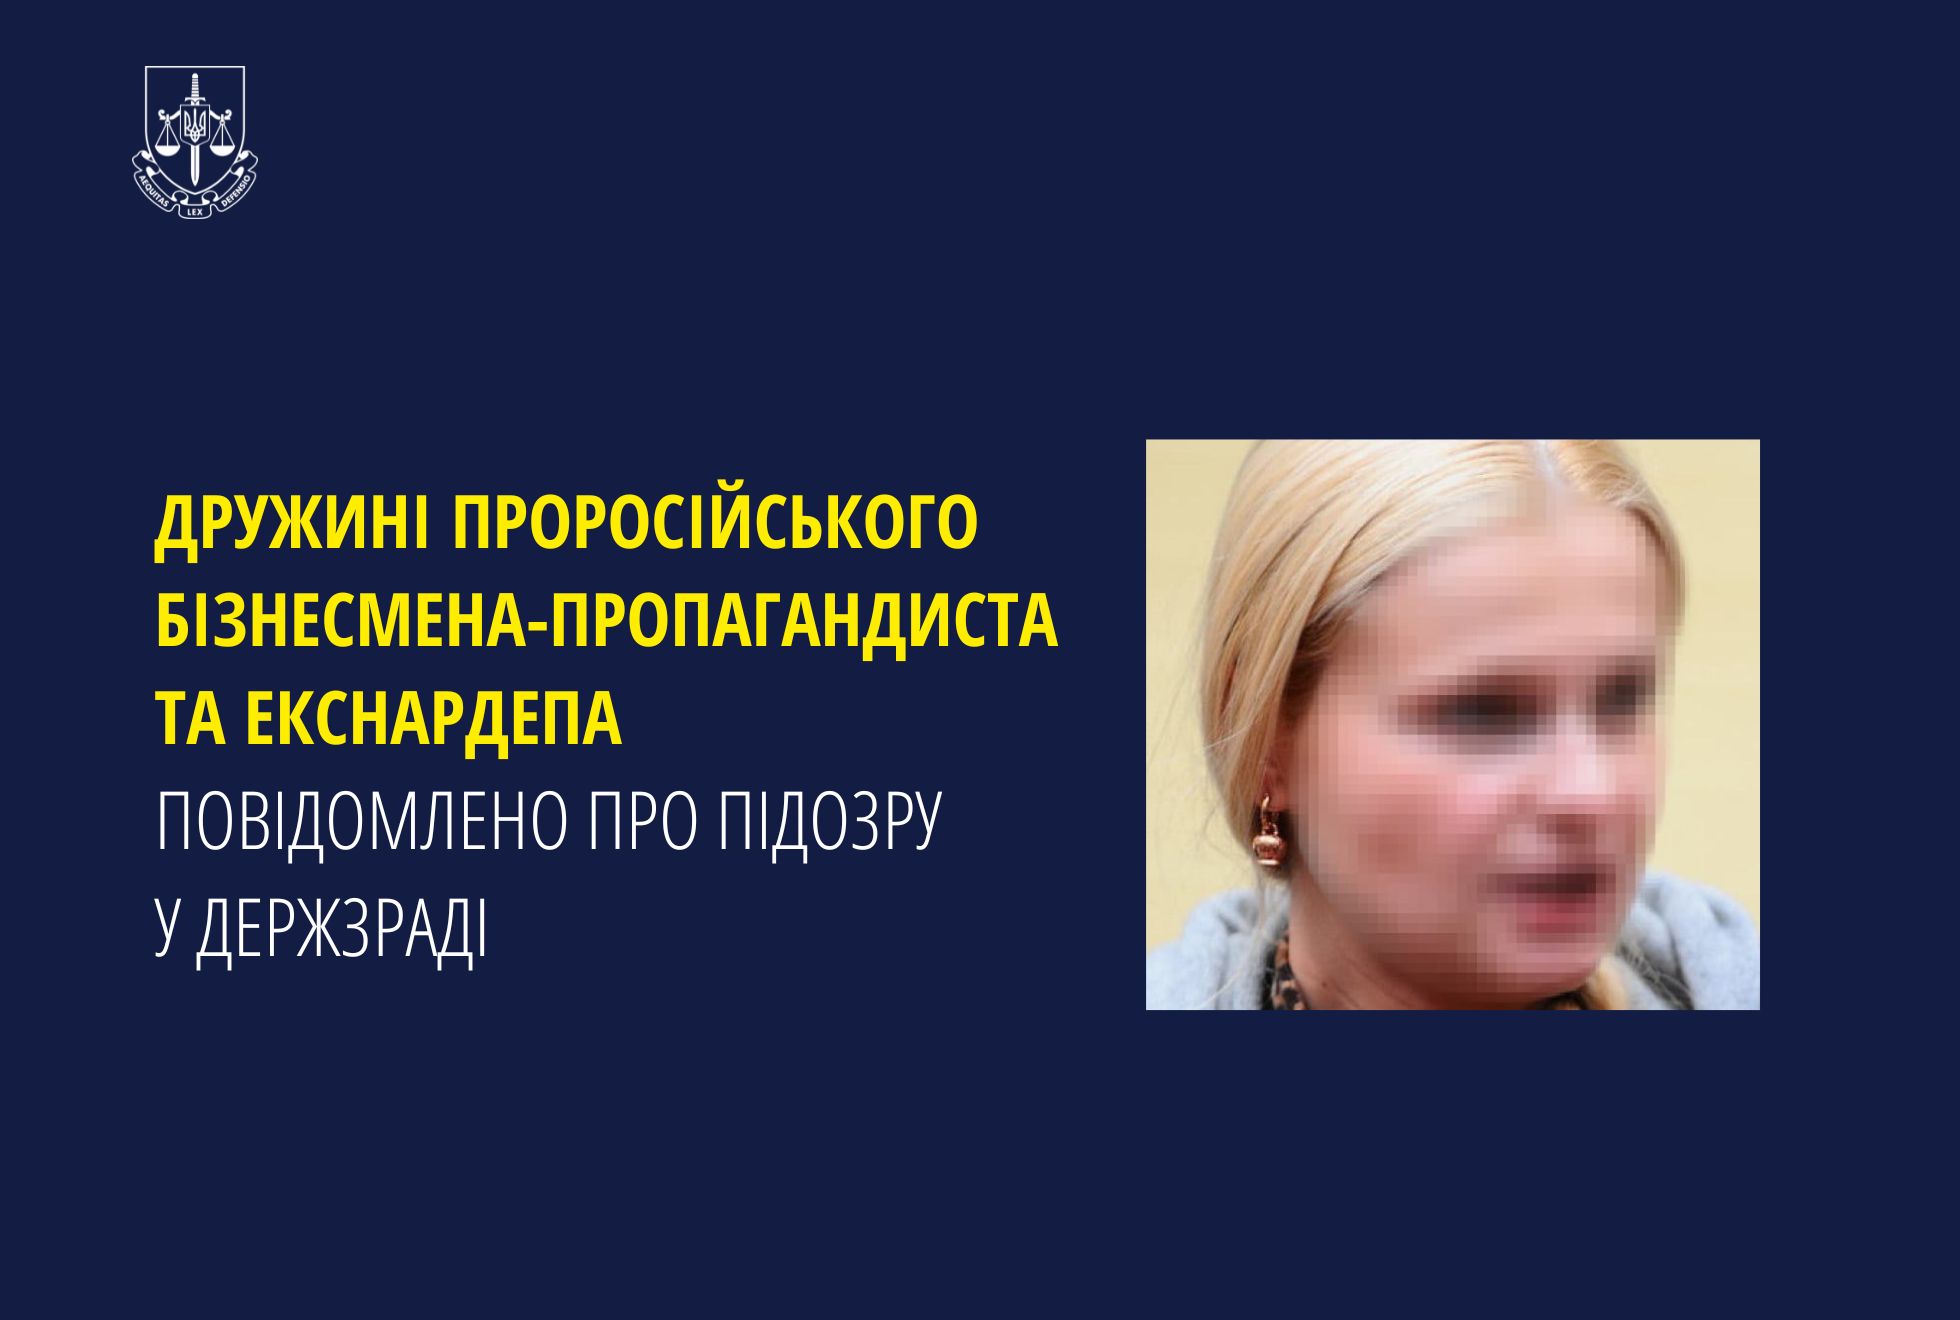 Дружині проросійського бізнесмена-пропагандиста та екснардепа повідомлено про підозру у держзраді